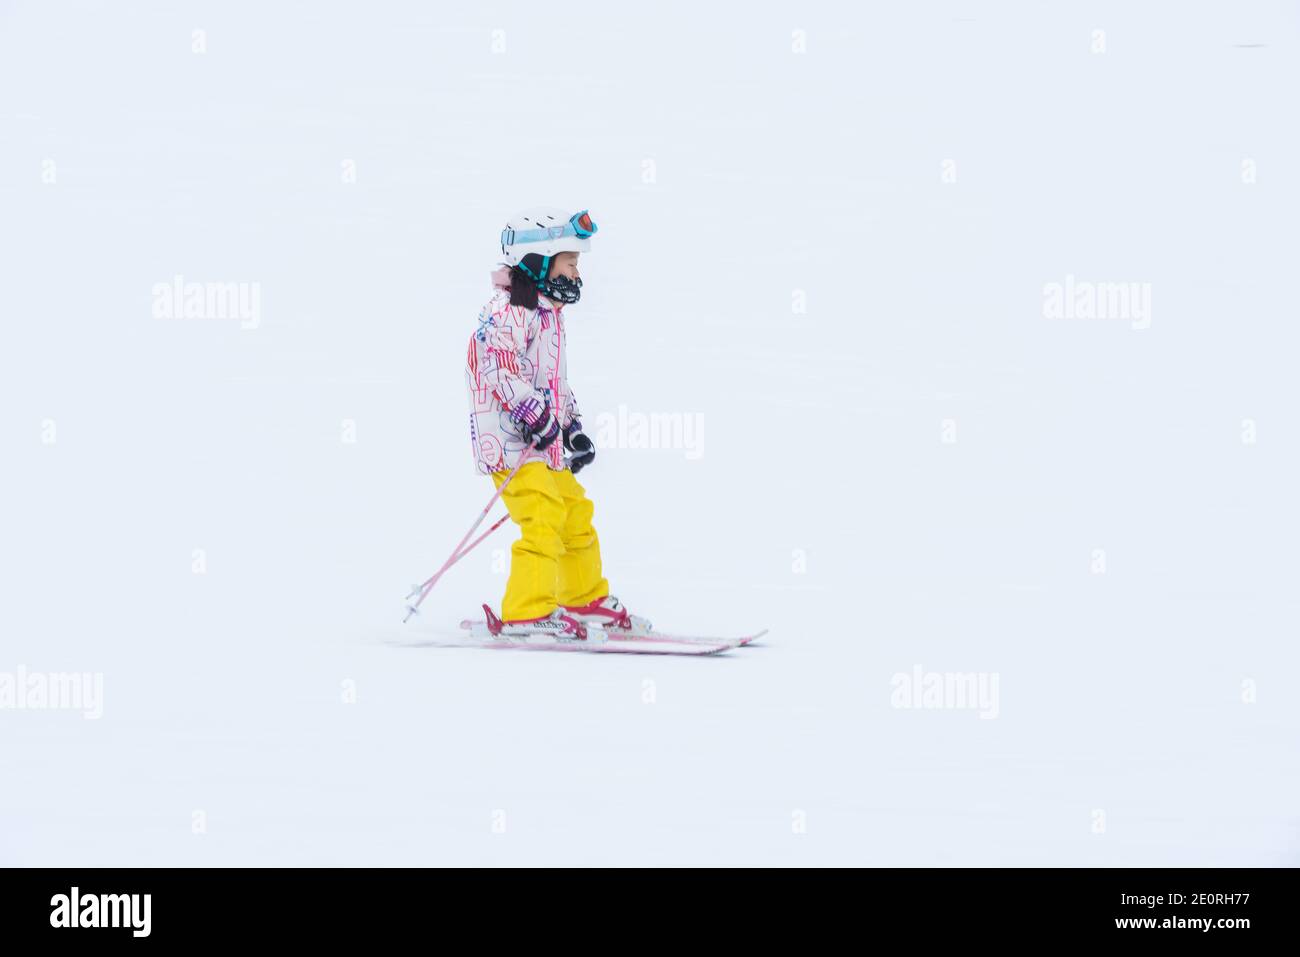 A child descends ski slopes in Niseko, Hokkaido, Japan Stock Photo